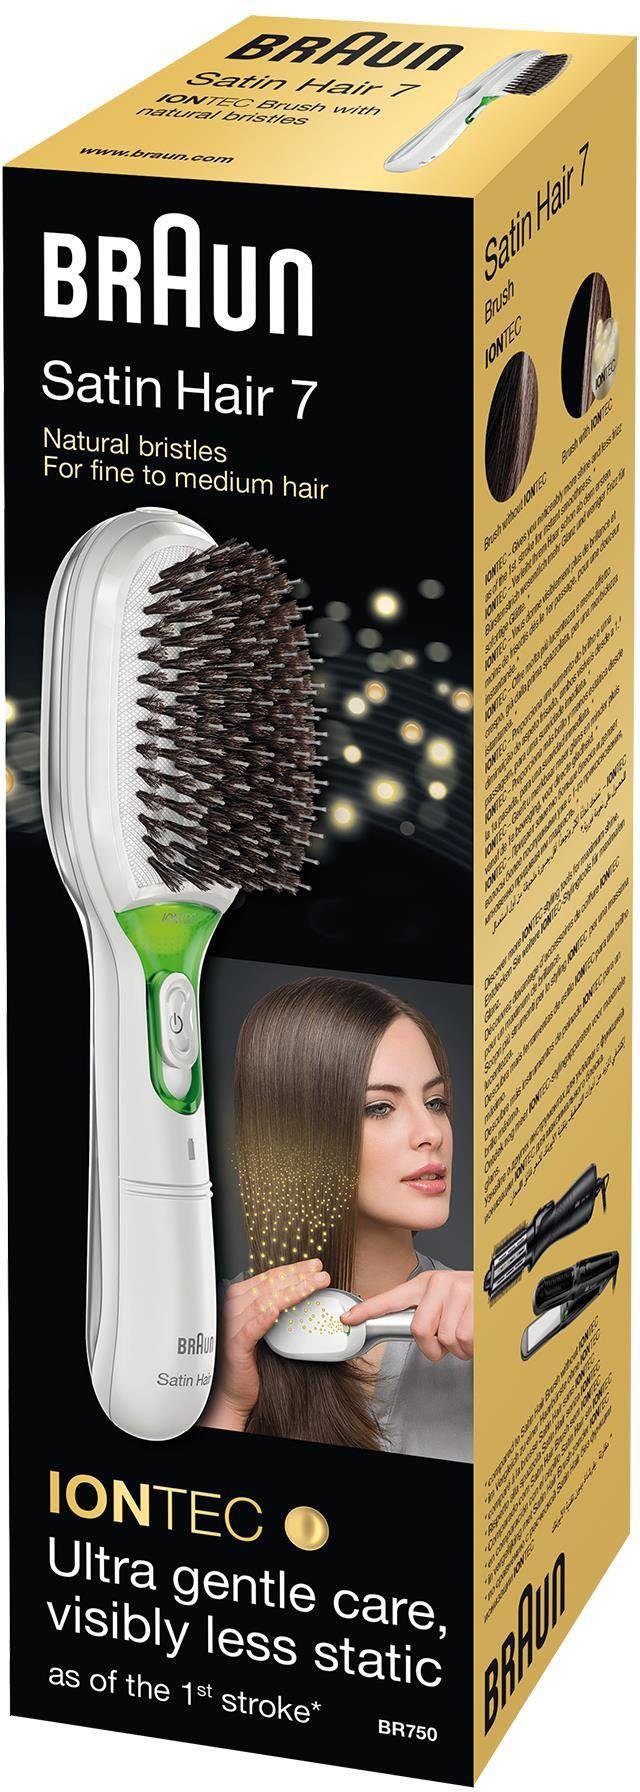 BR750, Braun 7 zur Glanz-Förderung Hair Ionen-Technologie natürliche IONTEC Haarglättbürste Satin Borsten,